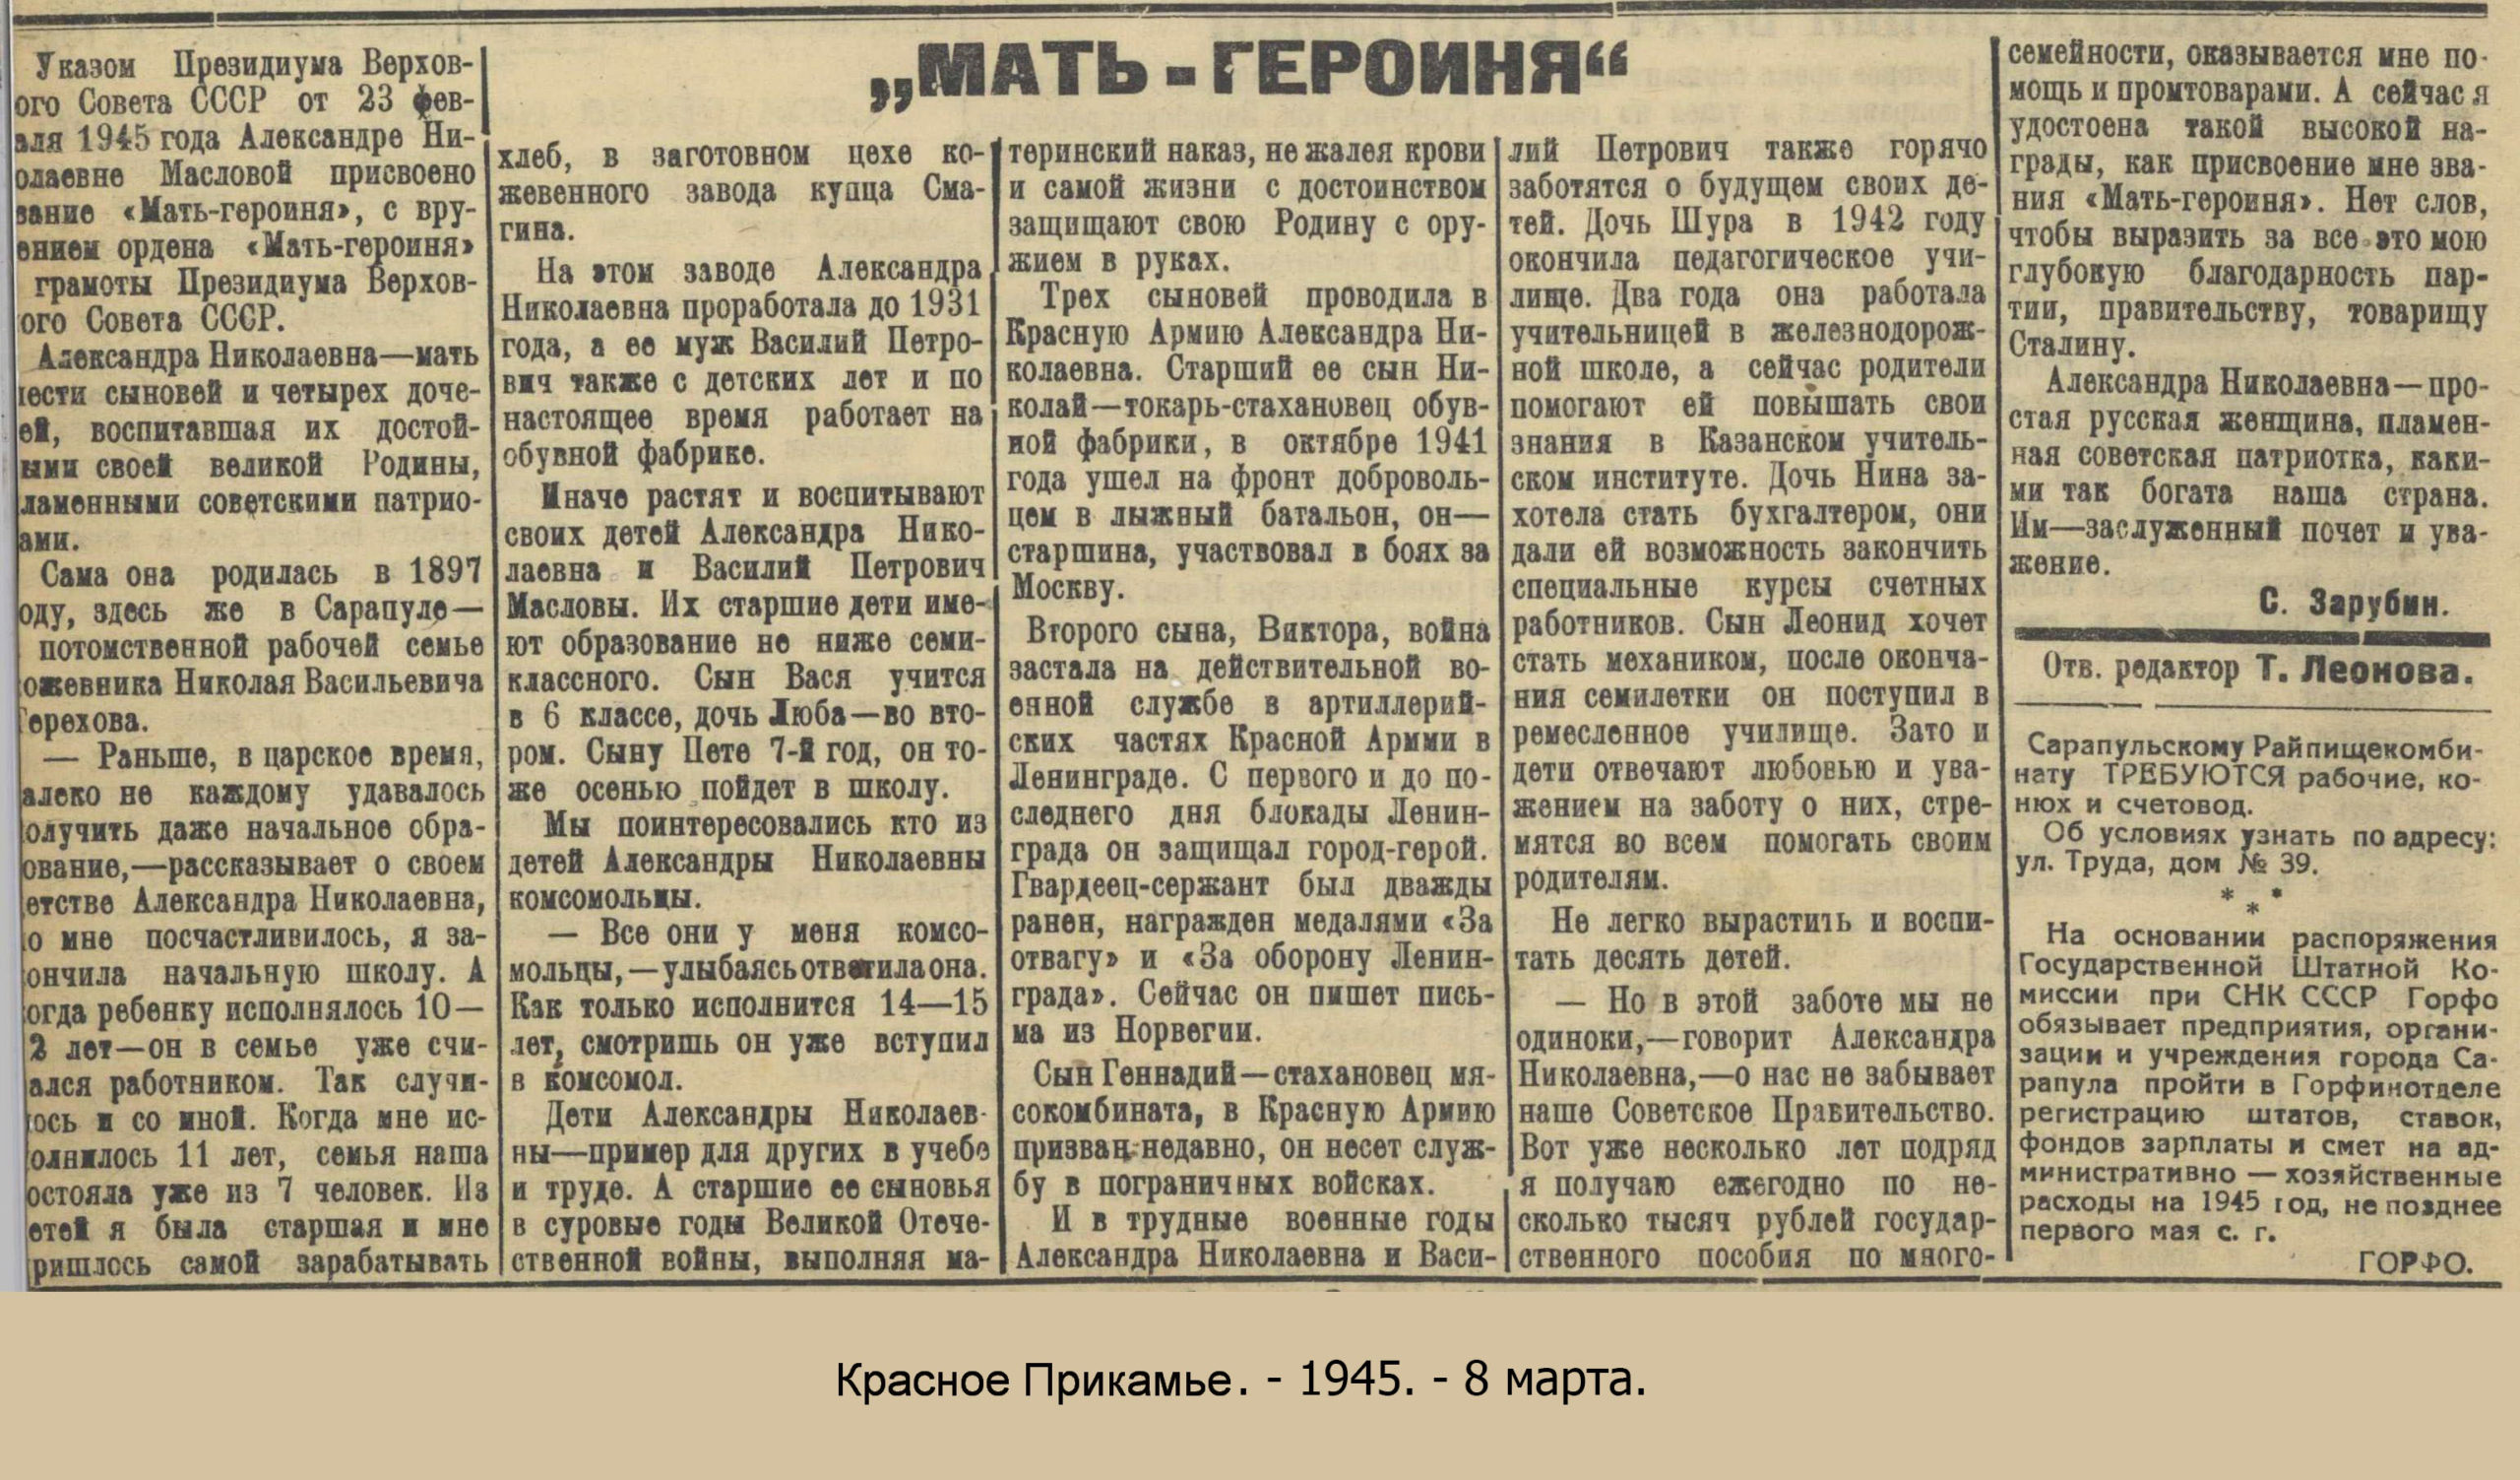 Красное Прикамье. - 1945. - 8 марта.